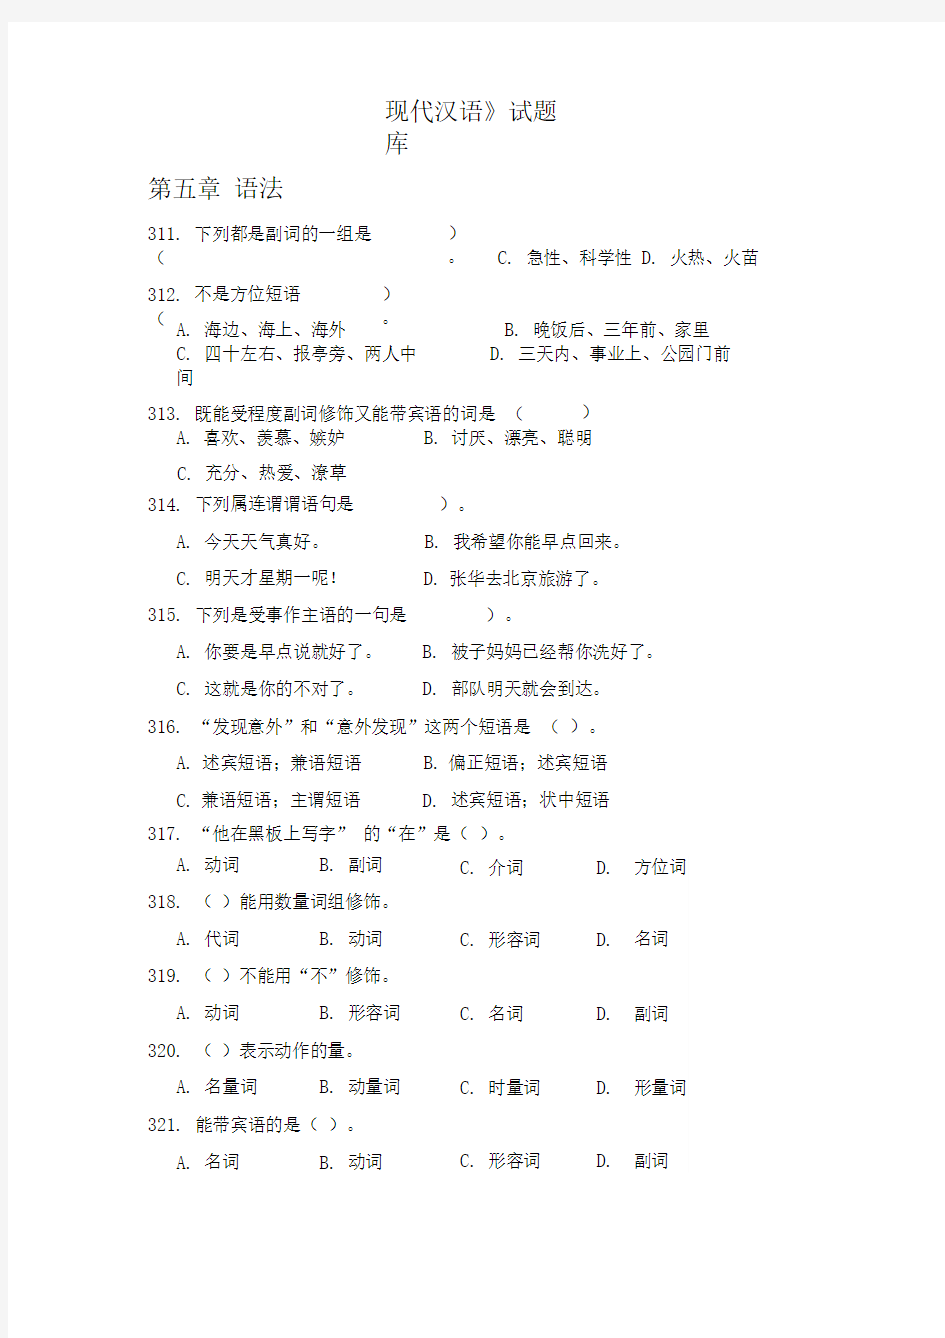 现代汉语试题库1